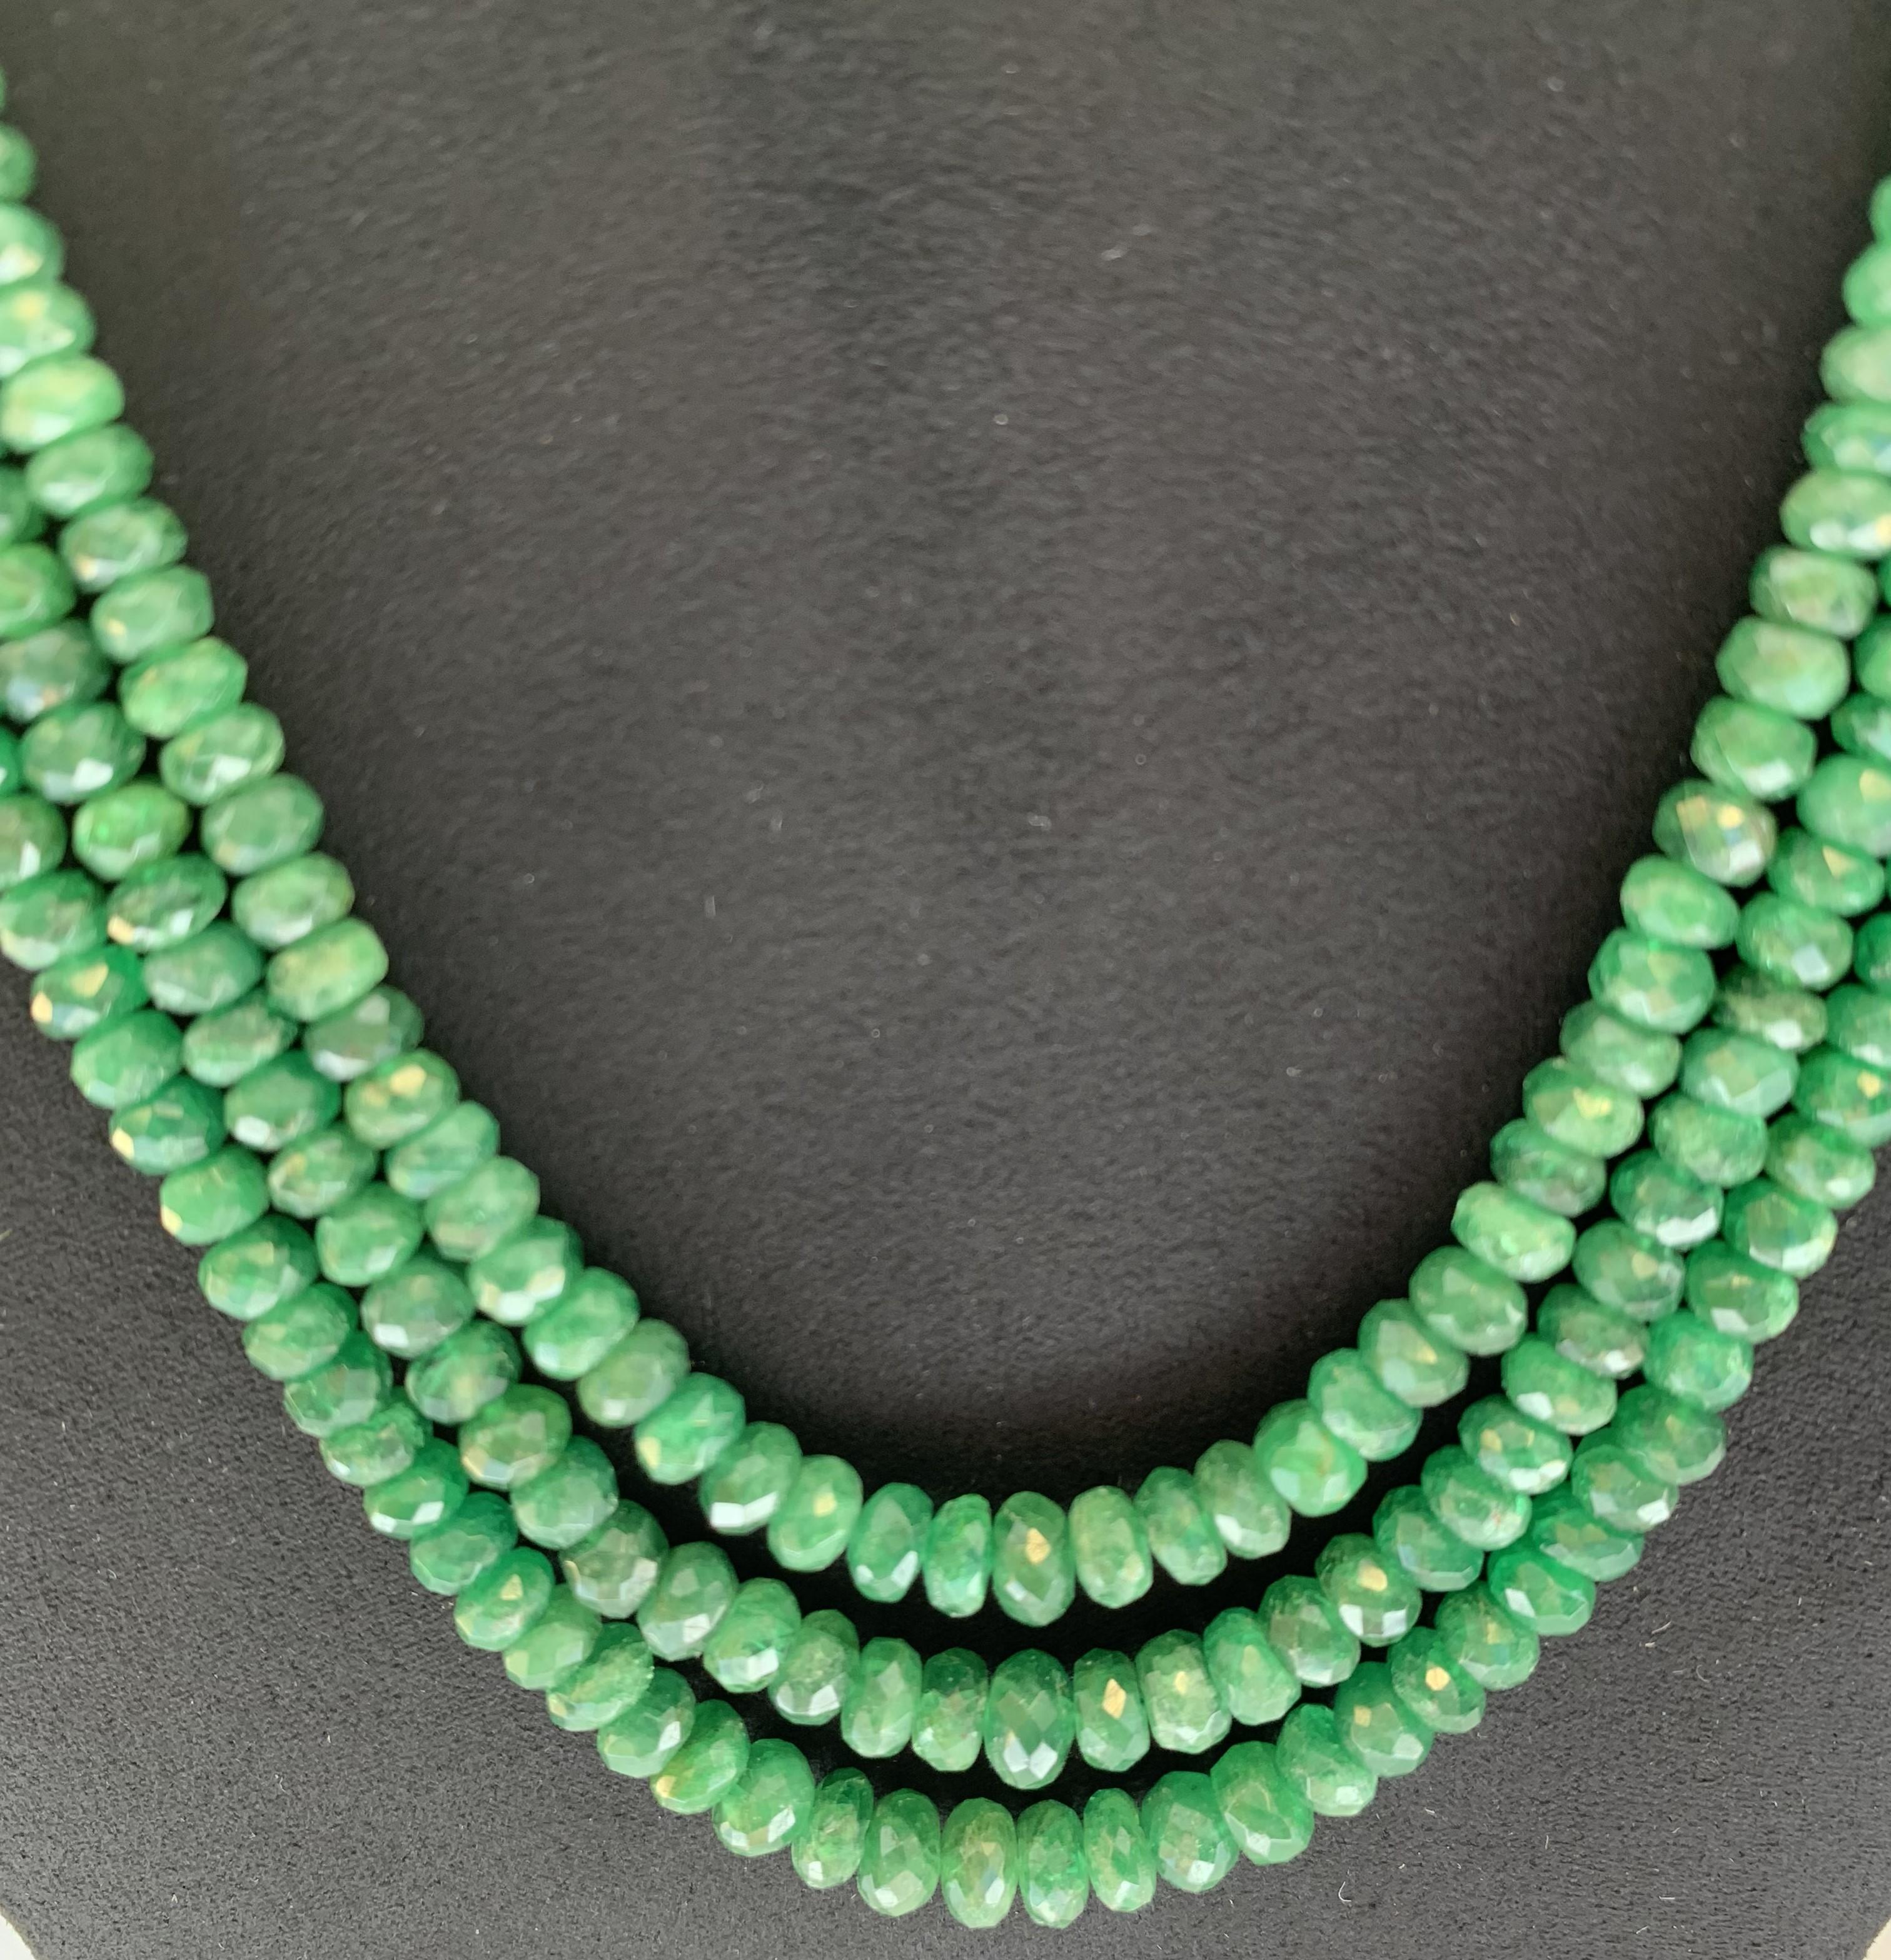 Collection Vie en couleur

Perles de tsavorite vert vif totalisant 272,12 ct, présentées sous la forme d'un long collier à trois lignes. La longueur peut être ajustée à partir des 22 pouces de base.

Tsavorite : 272.12ct poids total.
